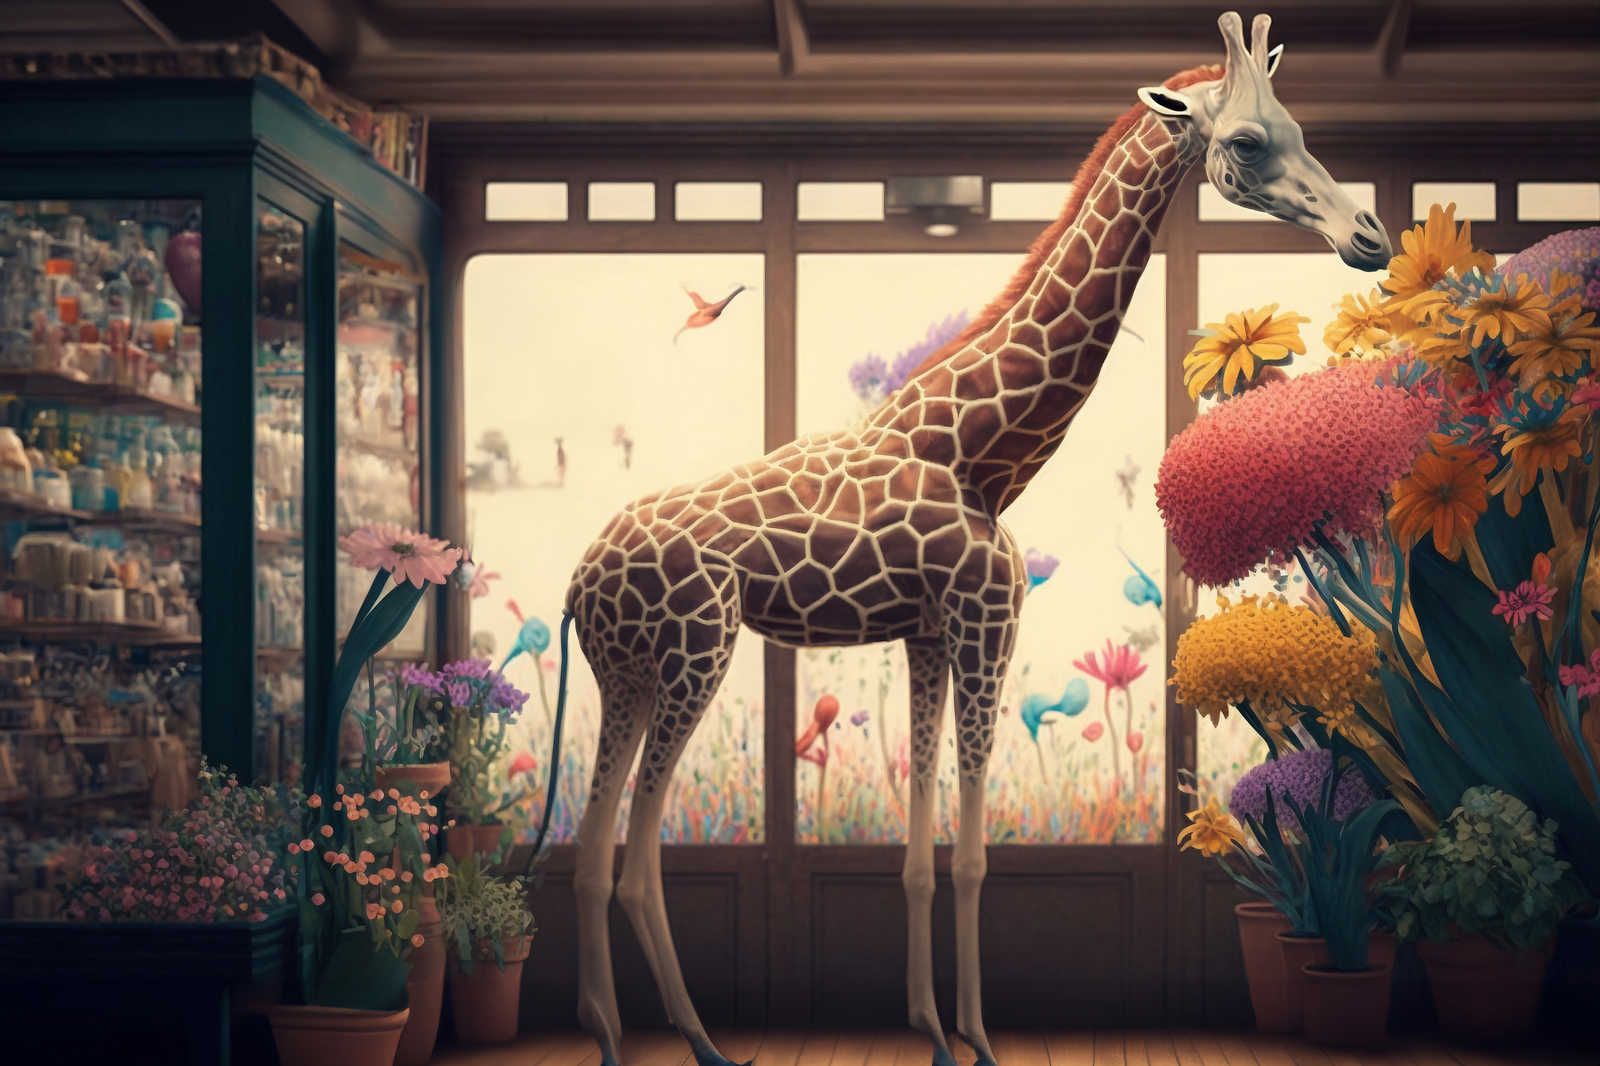             KI Quadro su tela »fiore di giraffa« - 90 cm x 60 cm
        